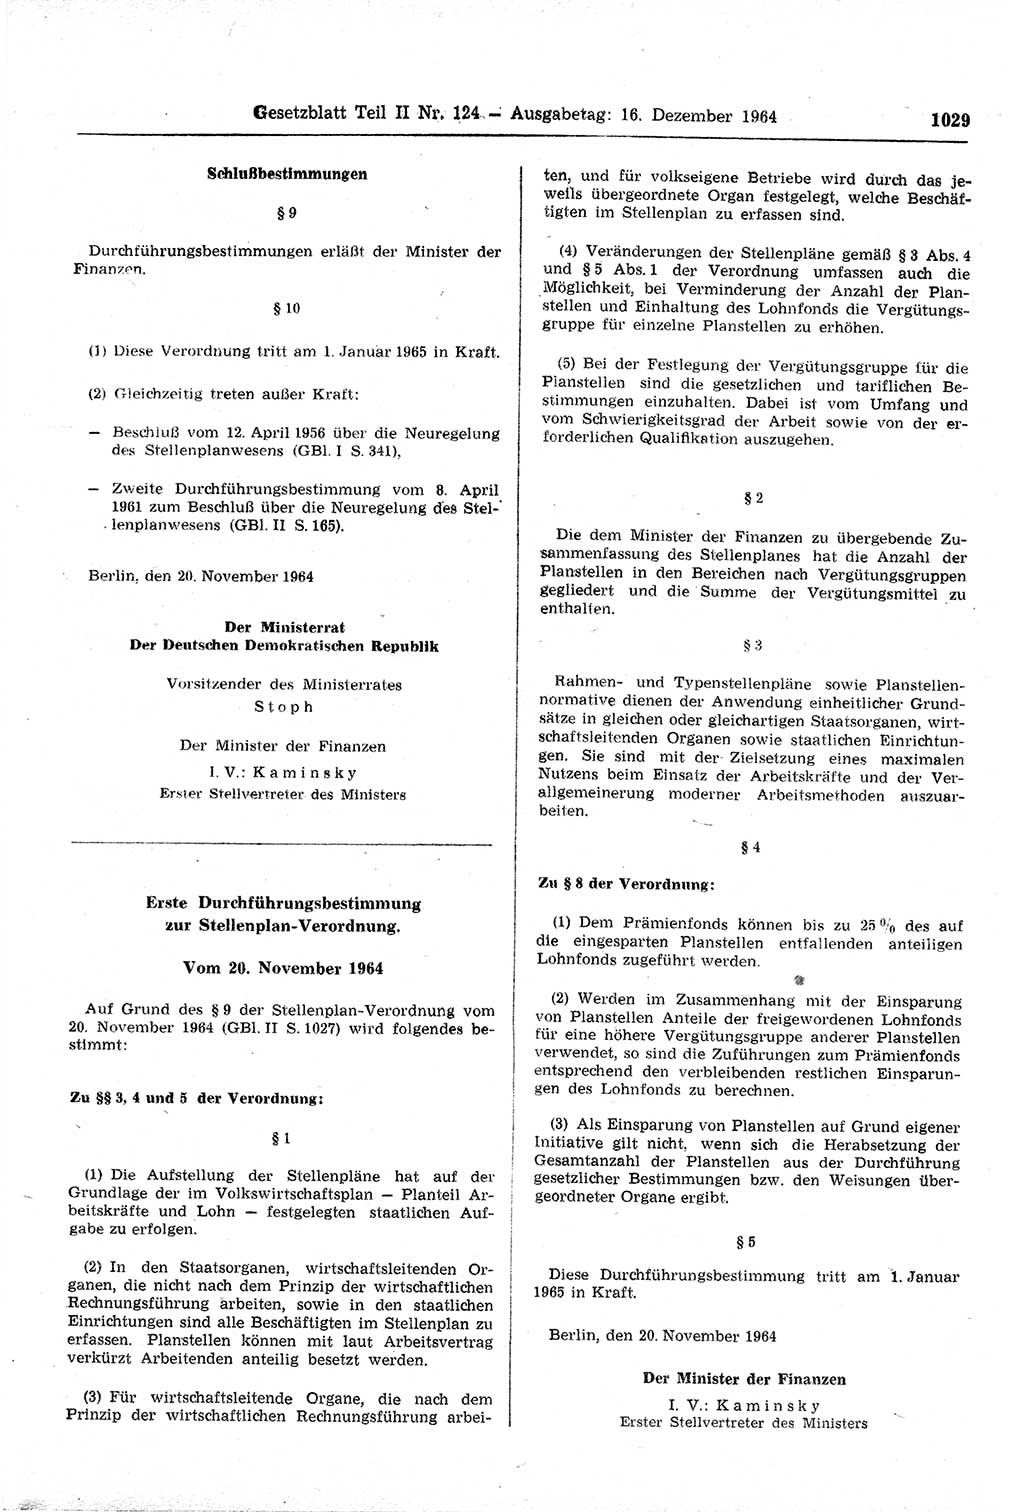 Gesetzblatt (GBl.) der Deutschen Demokratischen Republik (DDR) Teil ⅠⅠ 1964, Seite 1029 (GBl. DDR ⅠⅠ 1964, S. 1029)